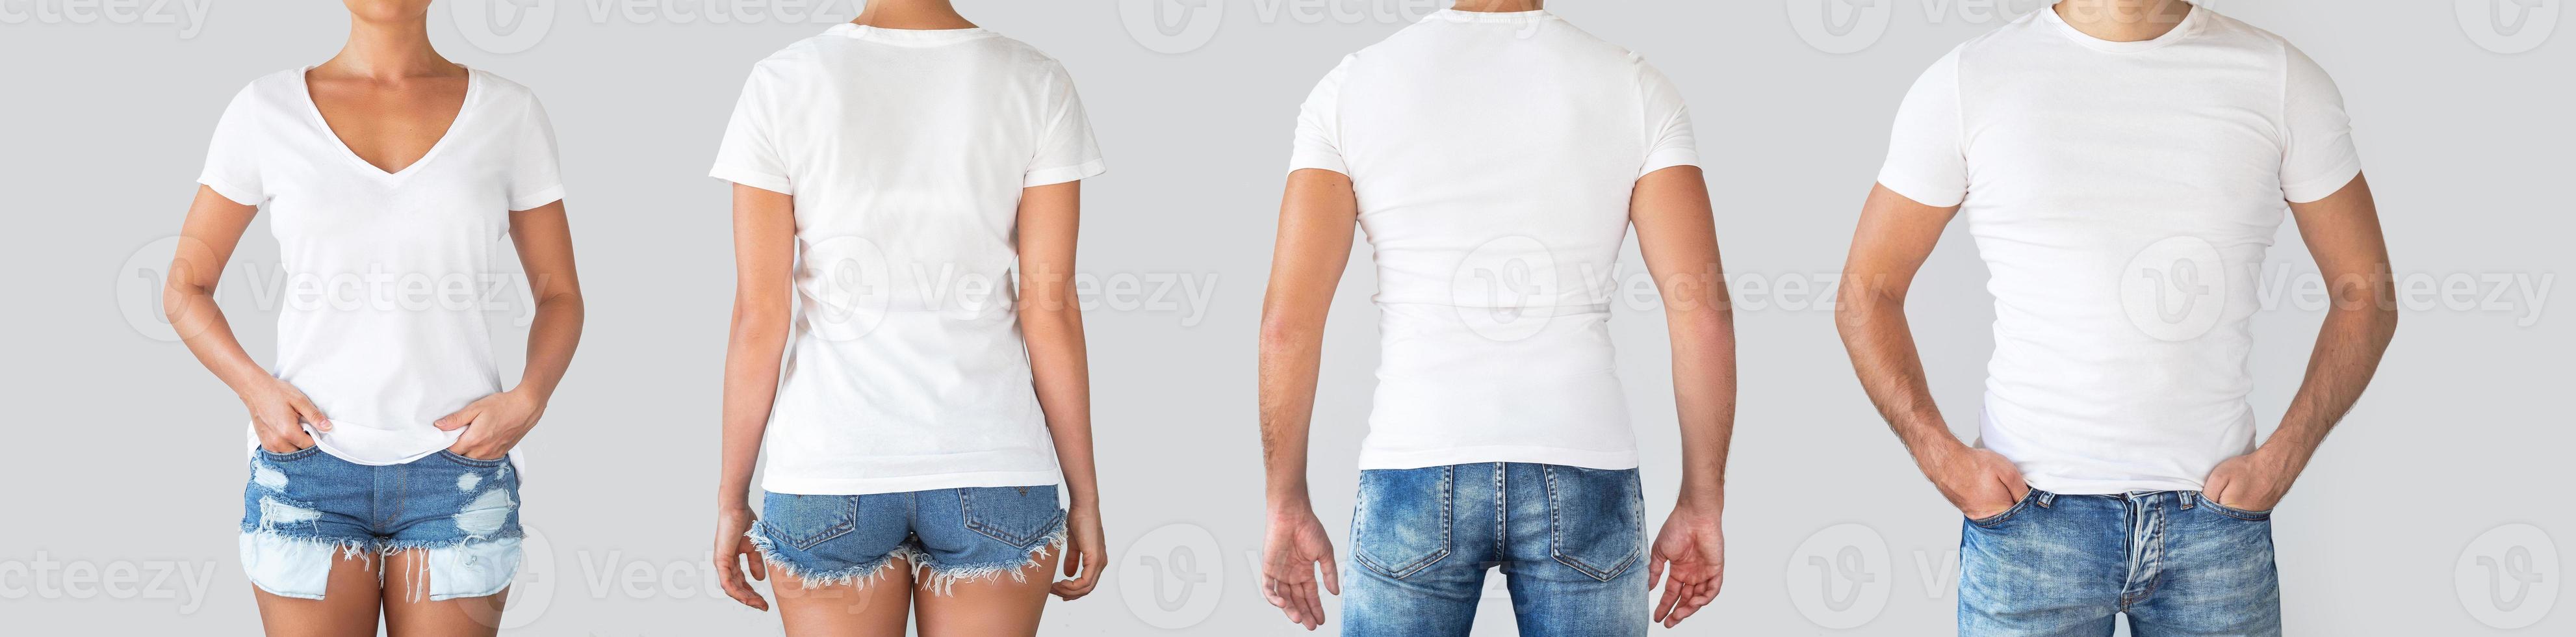 manlig och kvinna t-tröjor från annorlunda sidor för din logotyp eller text foto